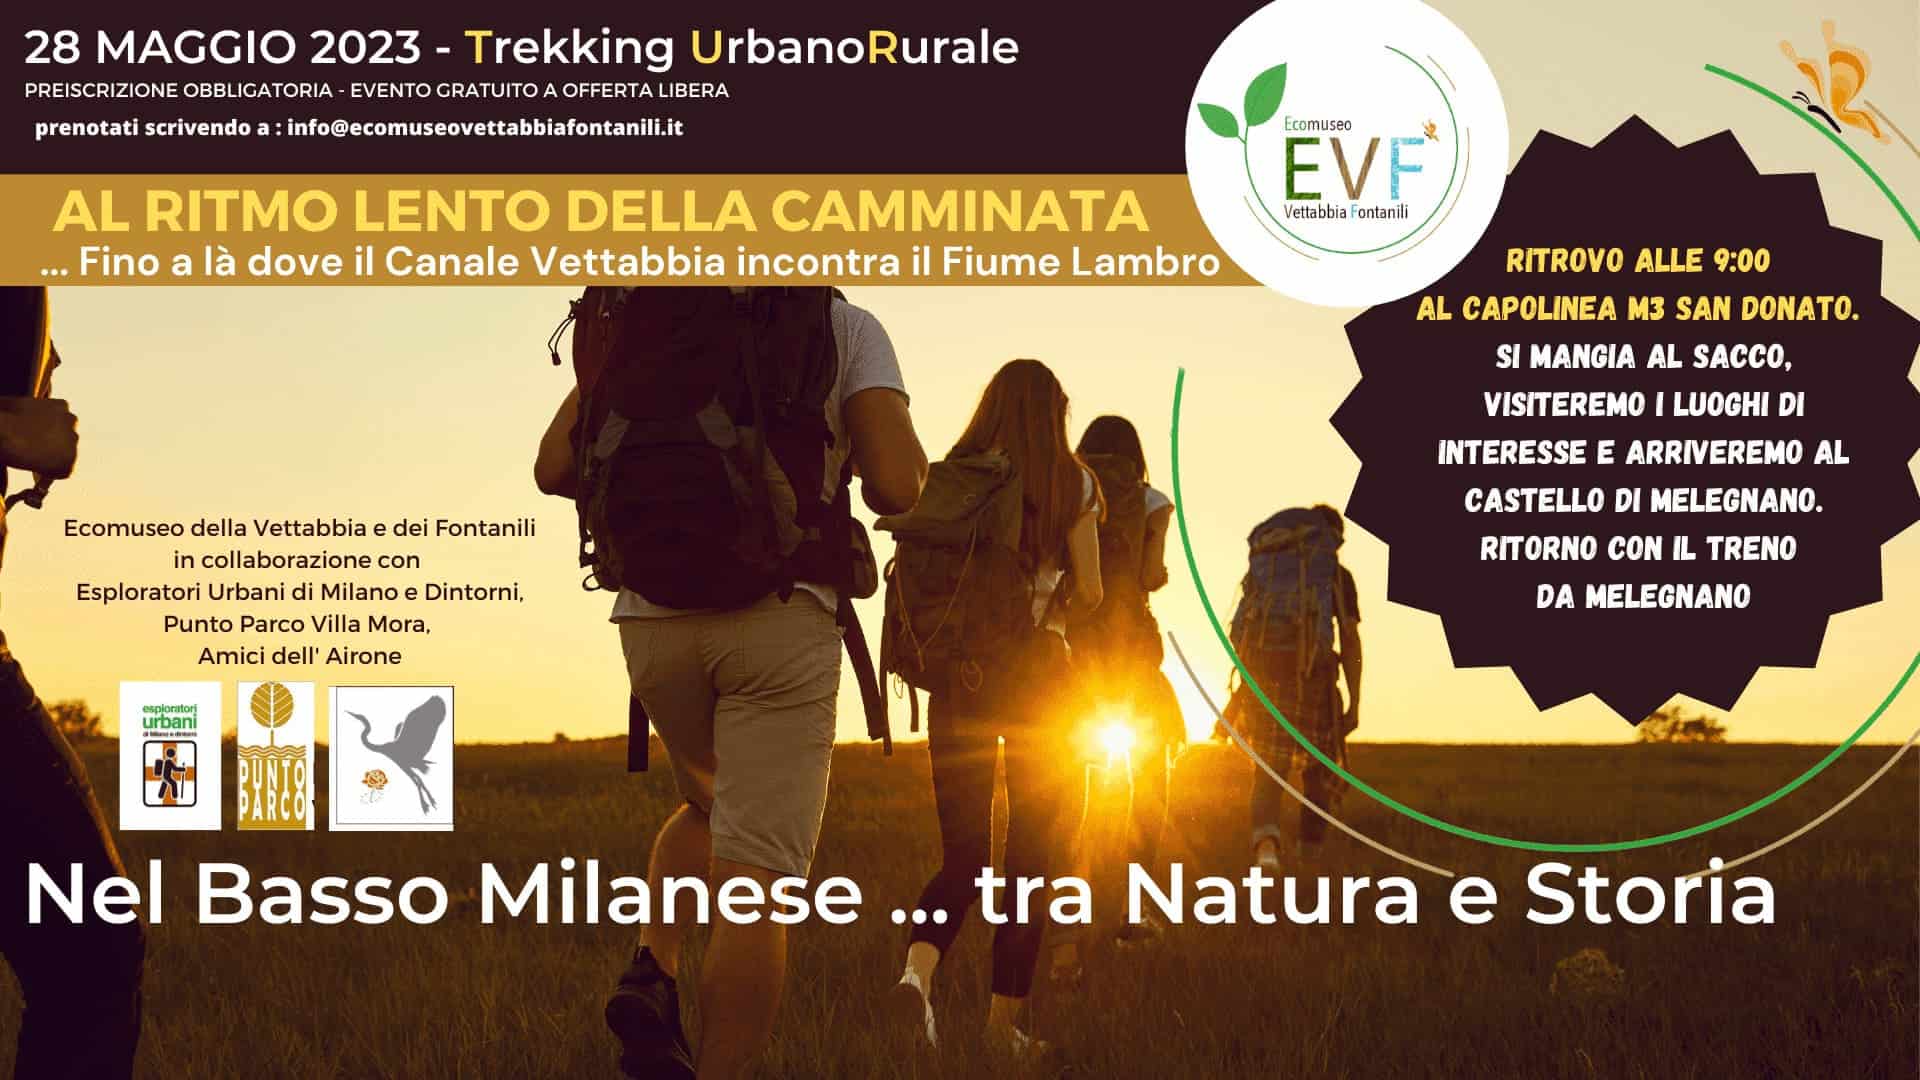 28 Maggio Trekking Urbano Rurale, nel basso milanese tra natura e storia, la dove il canale vettabbia incontra il Fiume Lambro